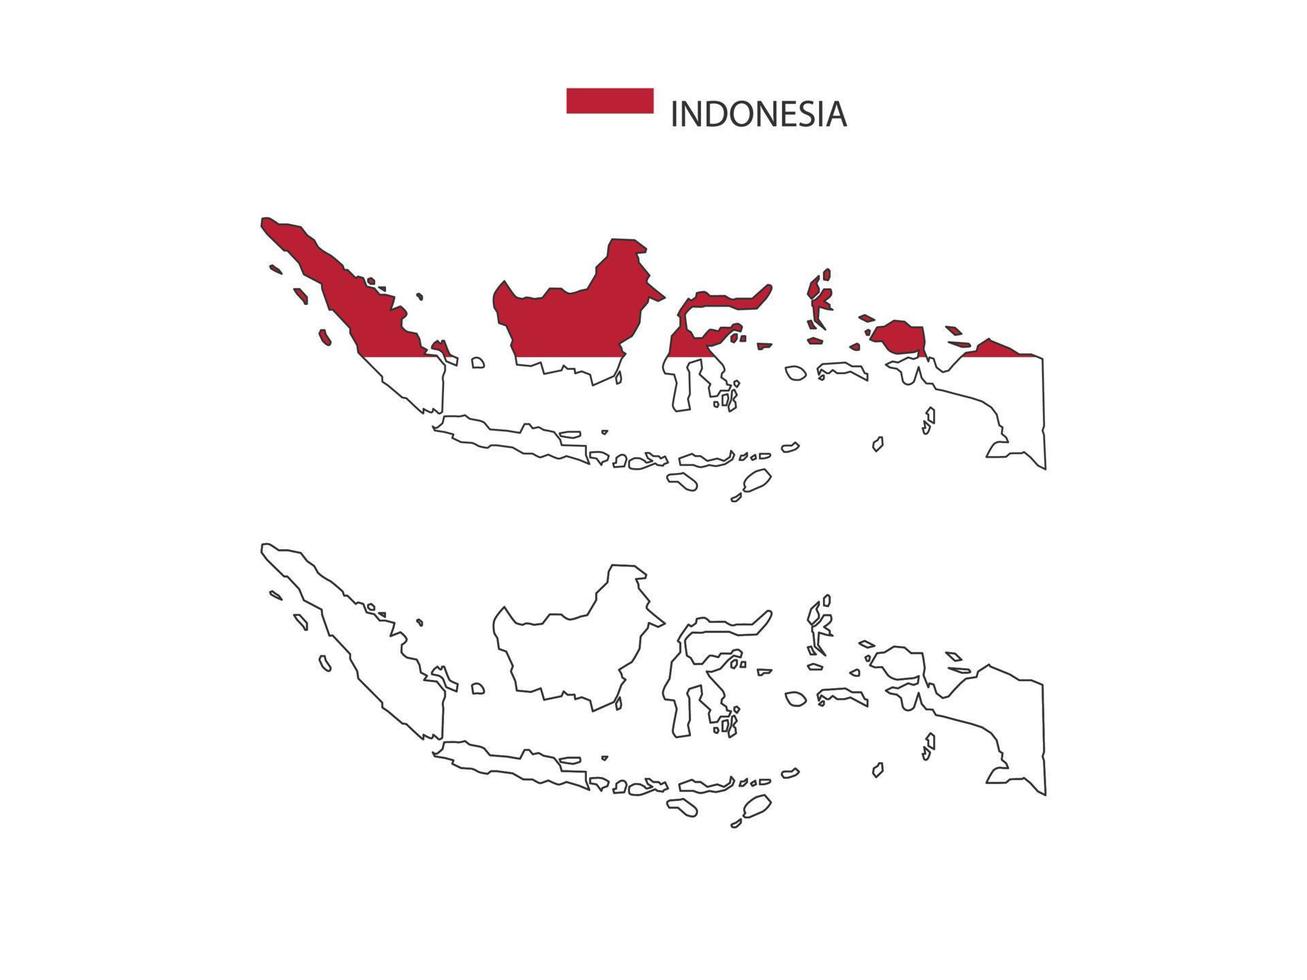 Indonesië kaart stad vector verdeeld door schets eenvoud stijl. hebben 2 versies, zwart dun lijn versie en kleur van land vlag versie. beide kaart waren Aan de wit achtergrond.